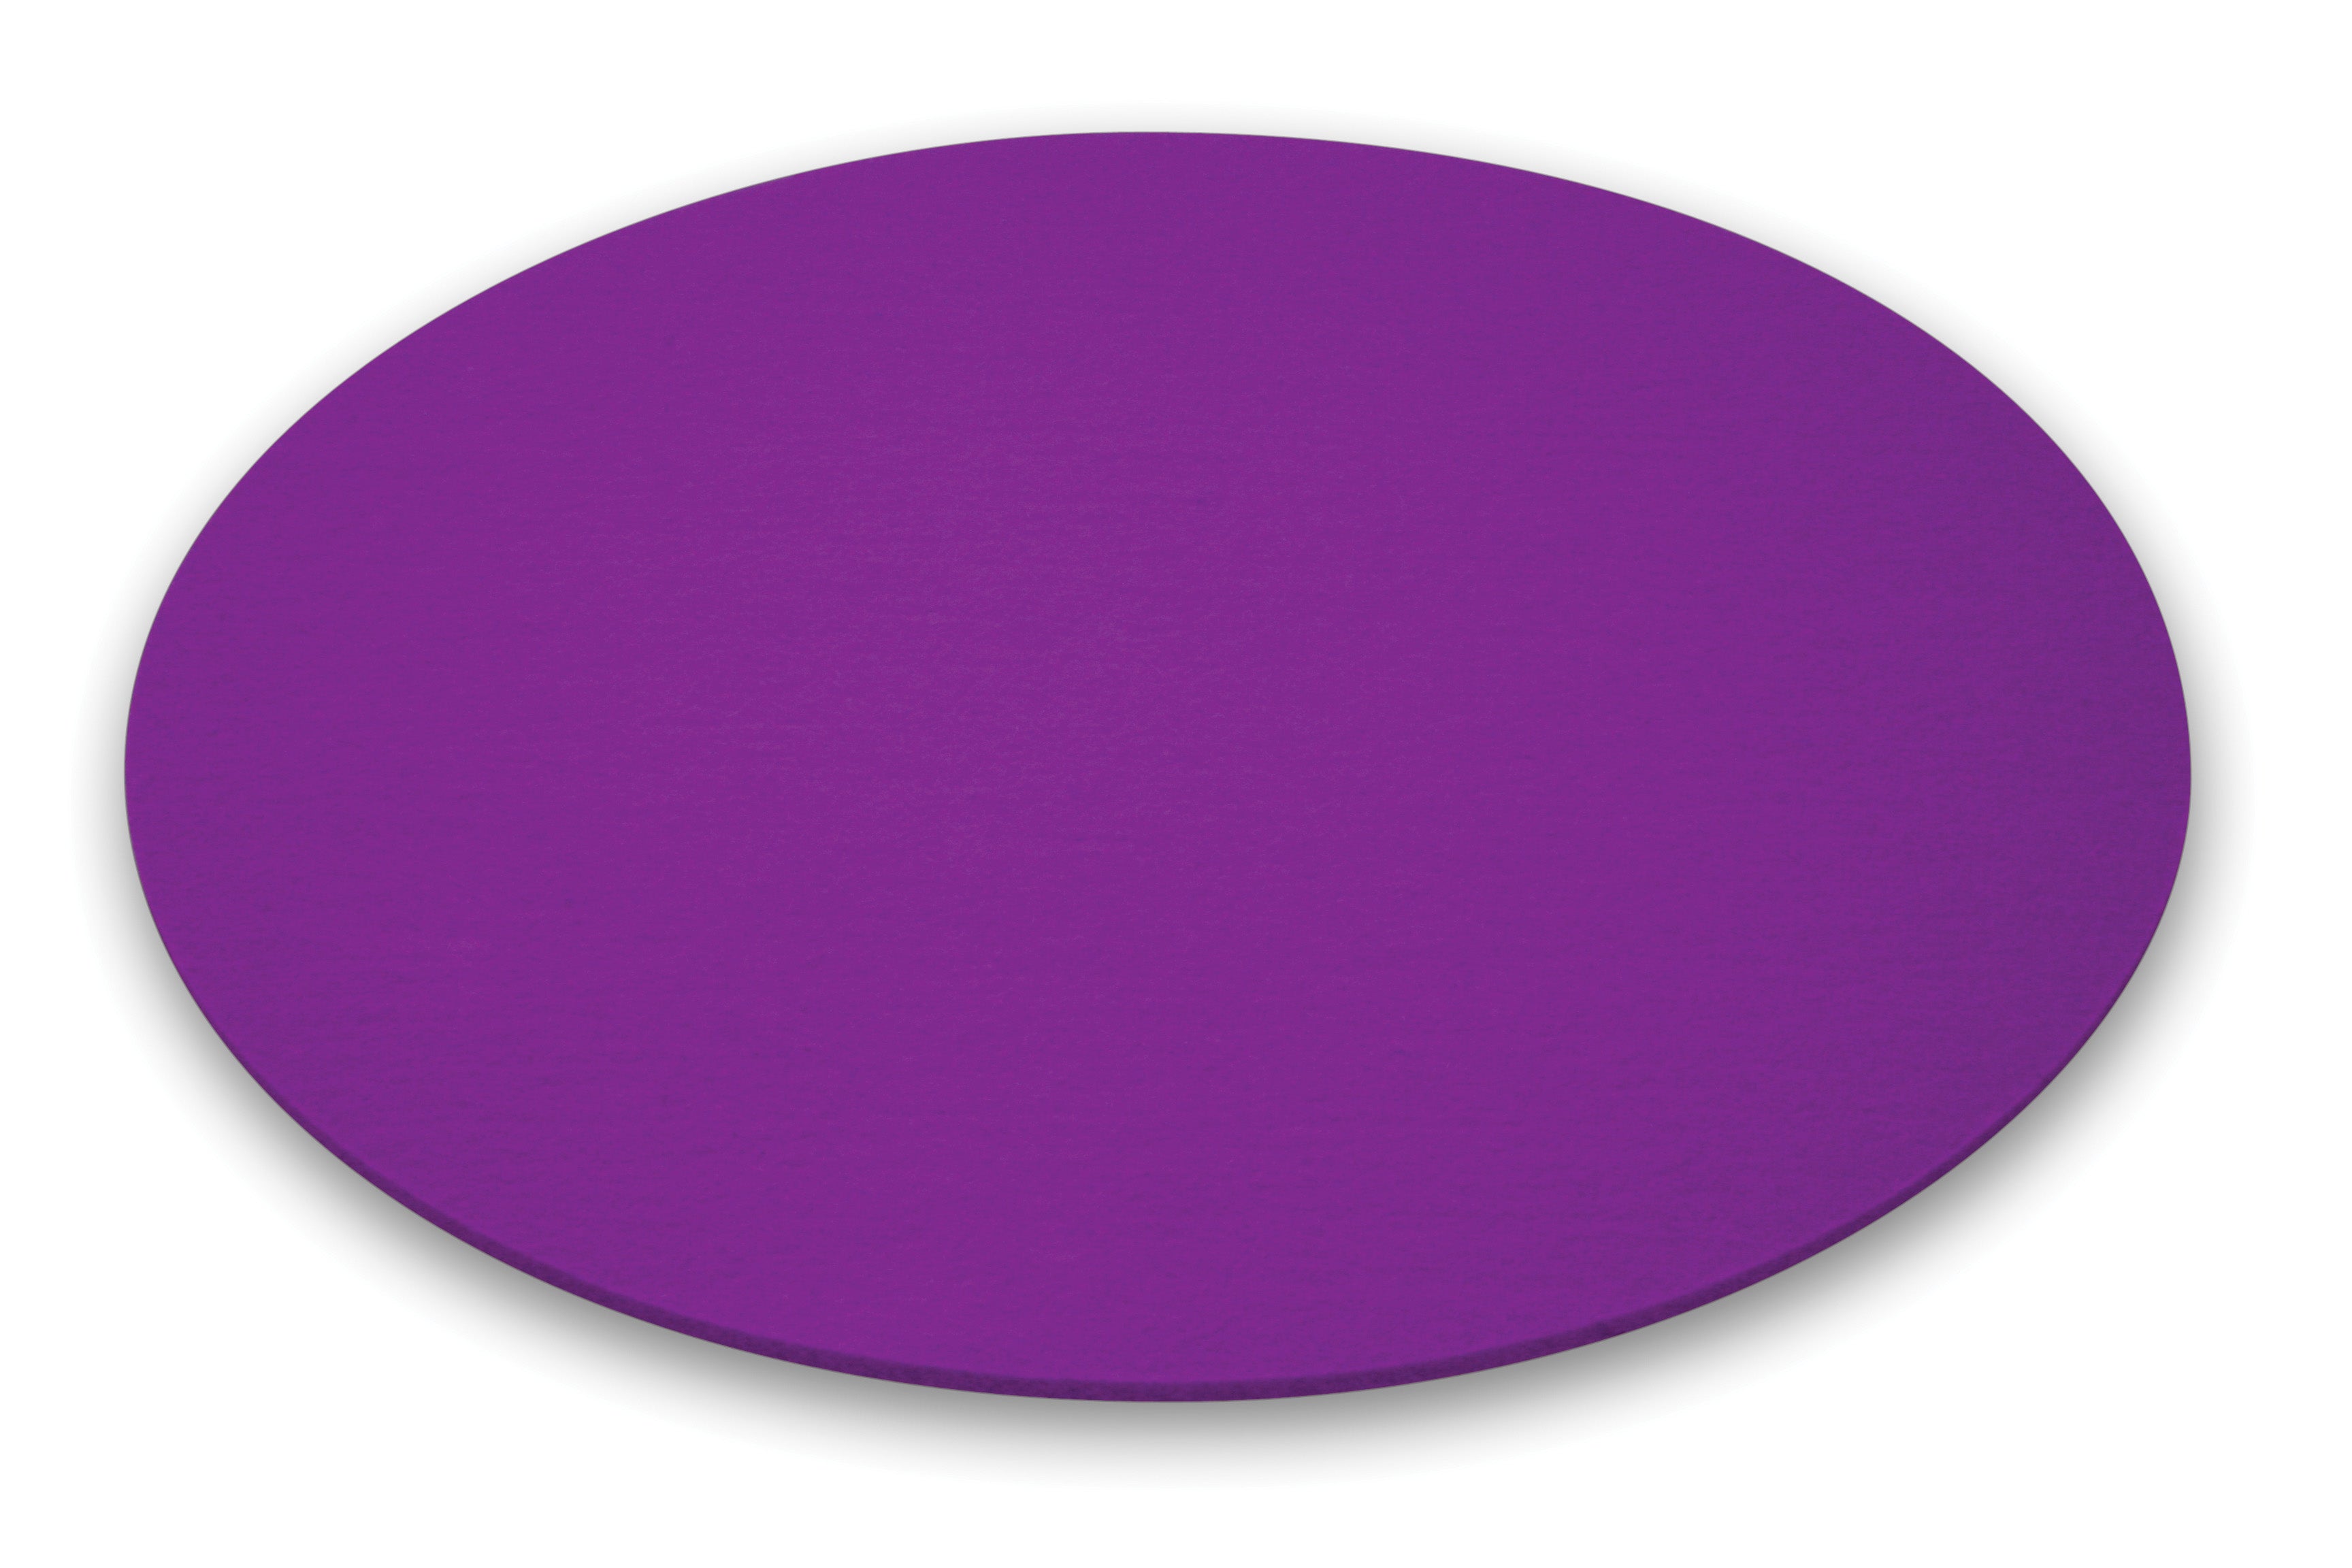 Runde Filzauflage für den Leuchttisch BUBBLE von Moree in violett; Ø 40cm.